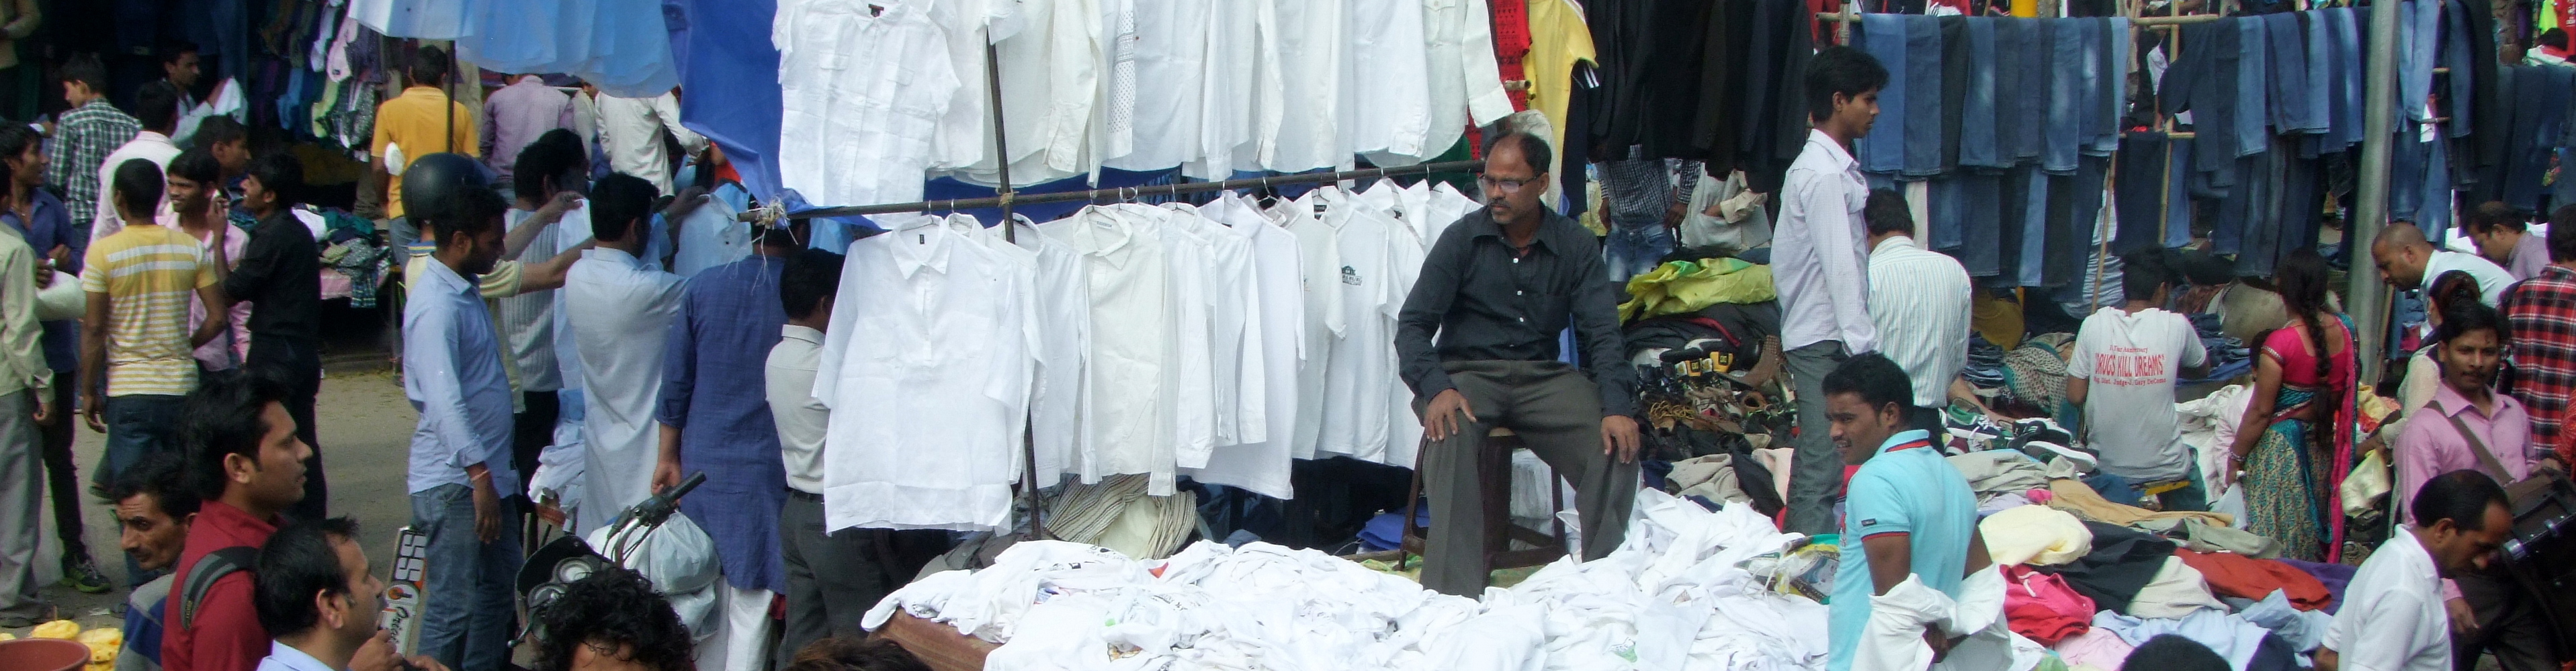 Kleidungsmarkt in Indien